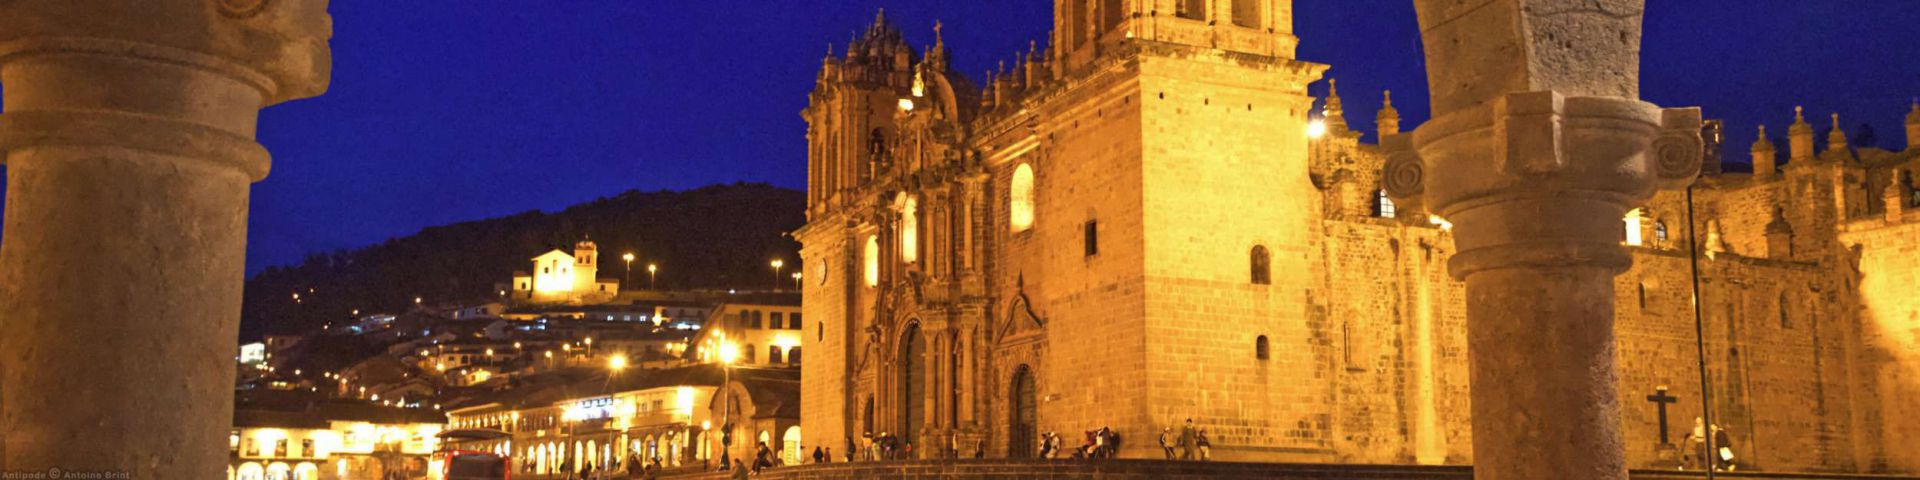 Plaza de Armas | Cuzco